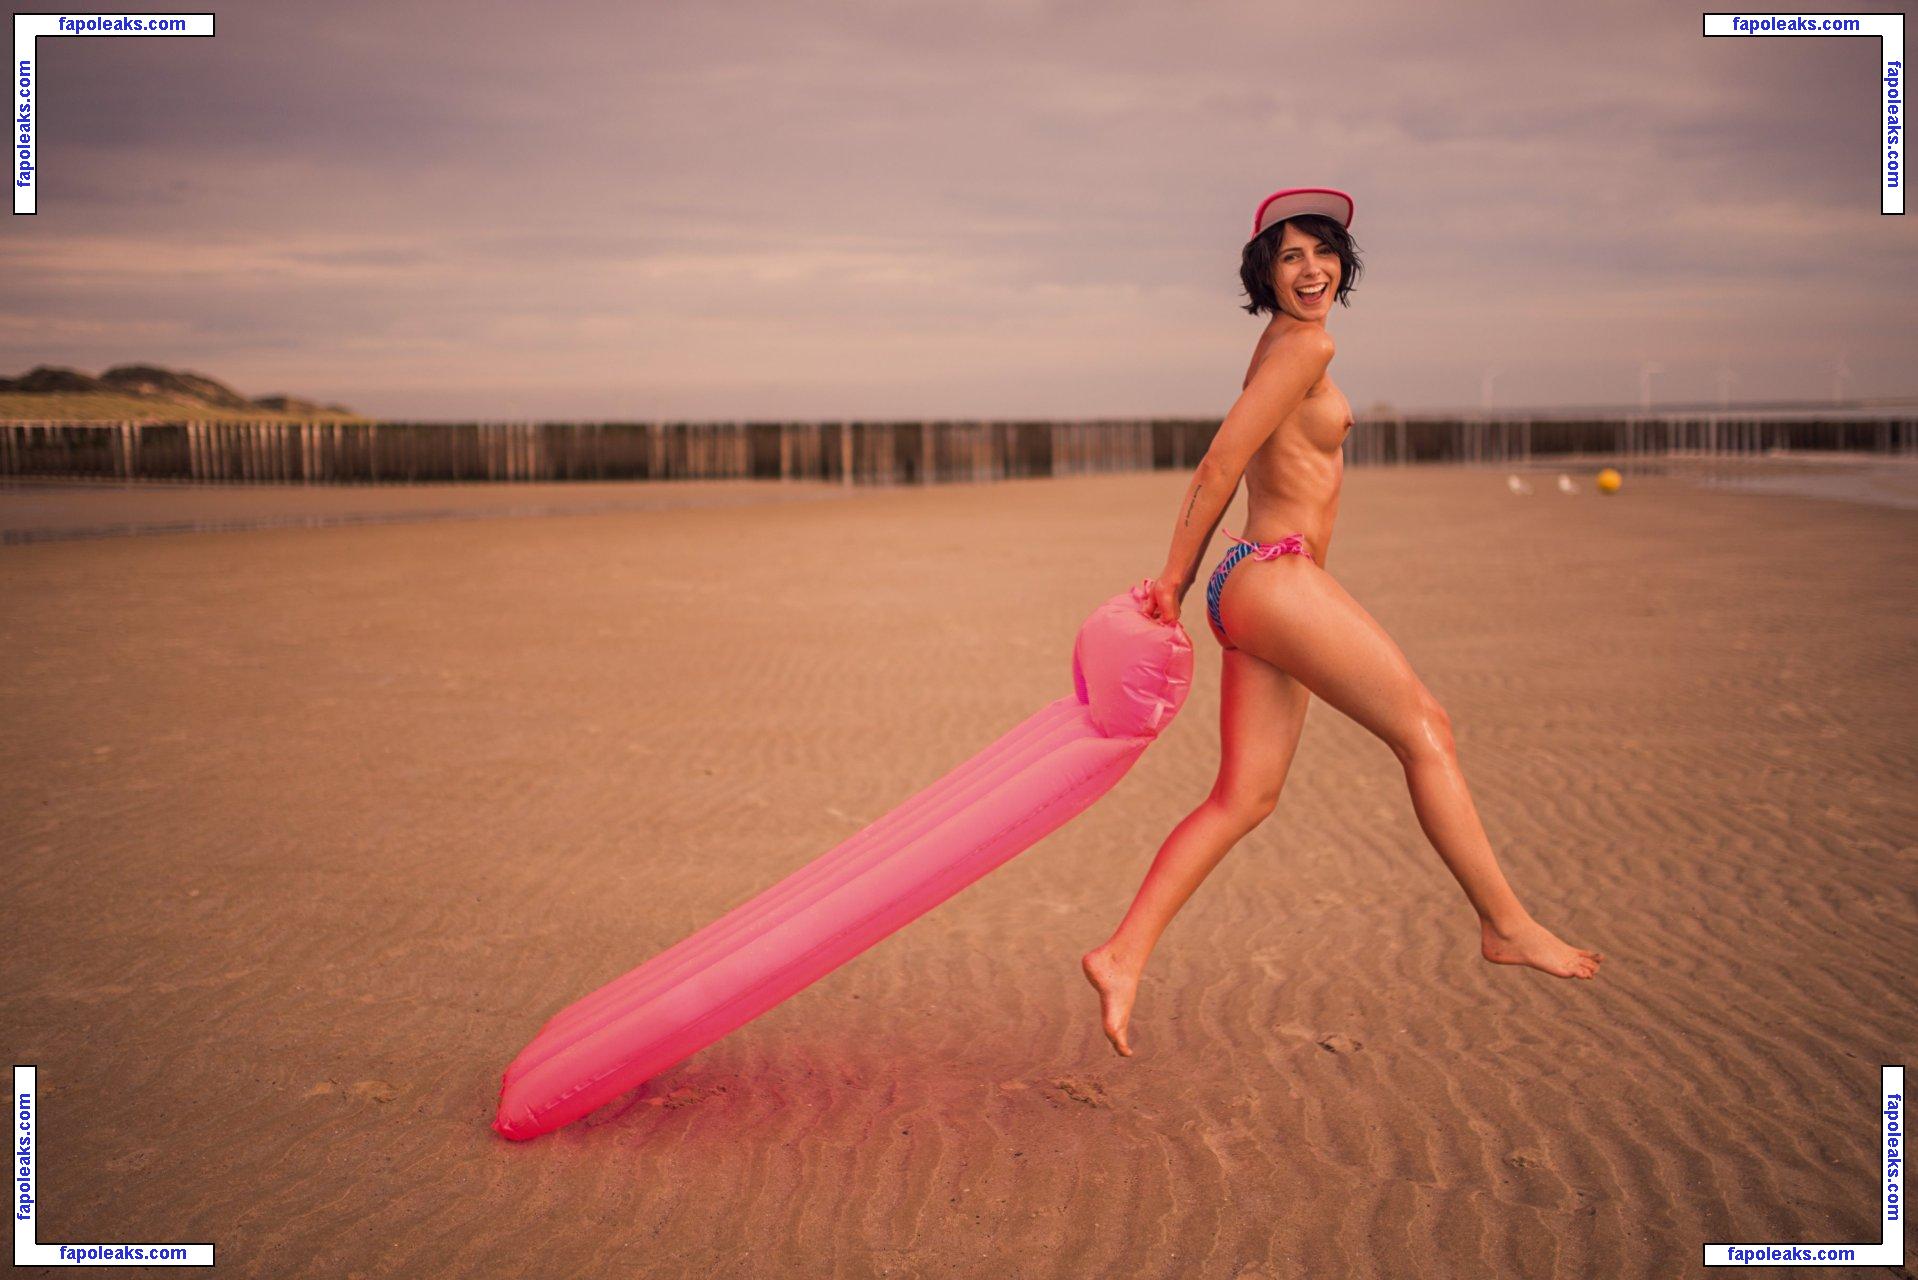 Franzi Skamet nude photo #0019 from OnlyFans